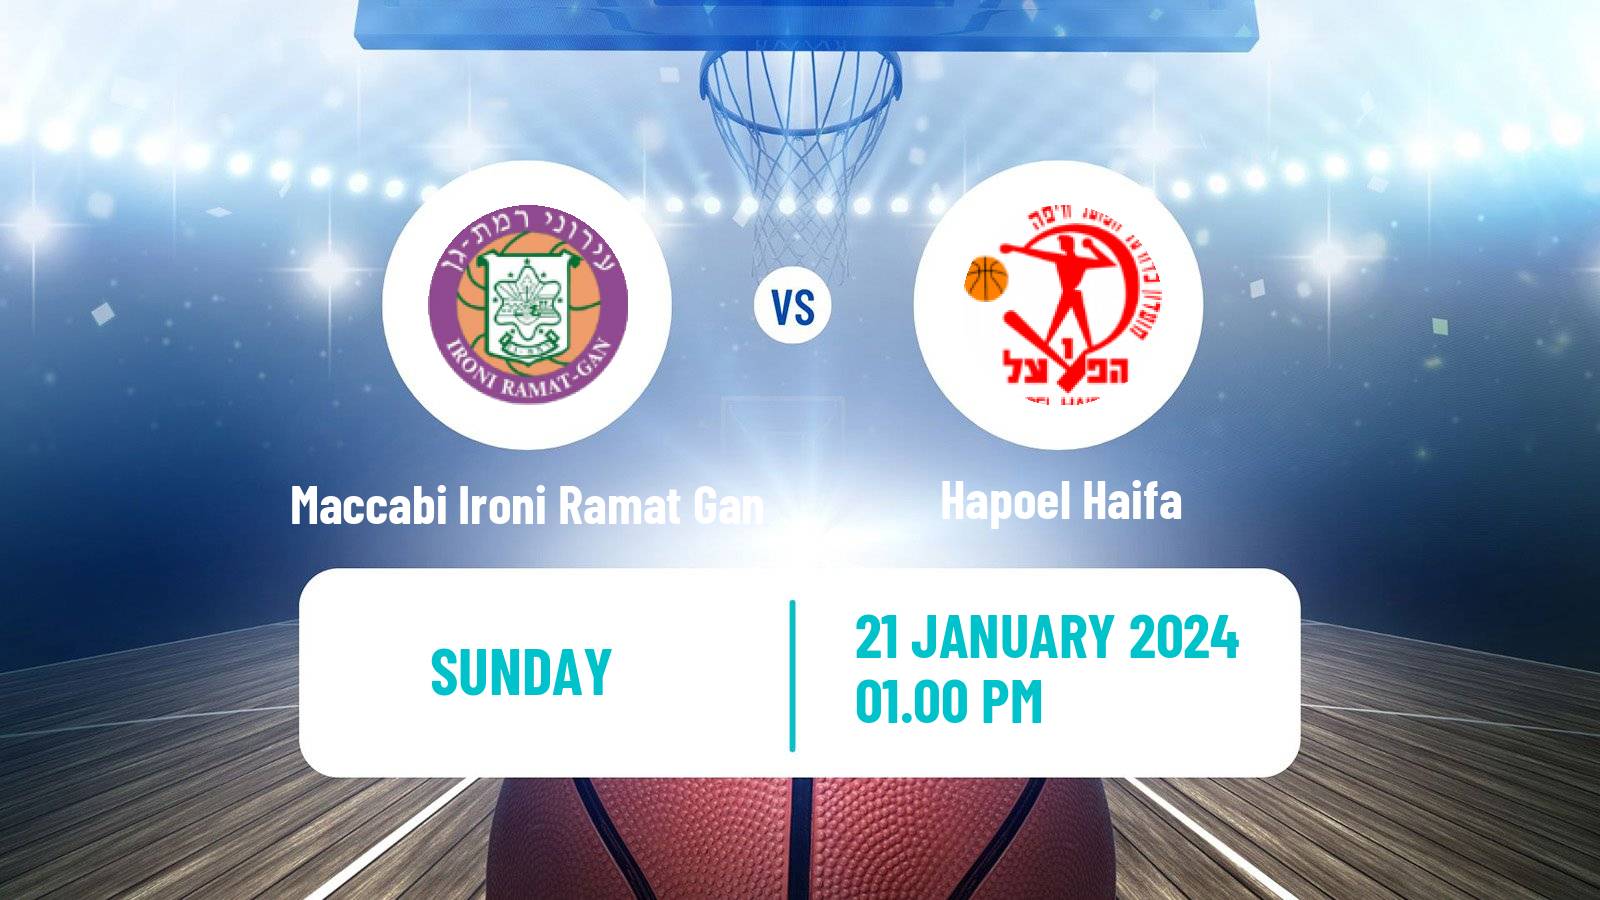 Basketball Israeli Basketball Super League Maccabi Ironi Ramat Gan - Hapoel Haifa